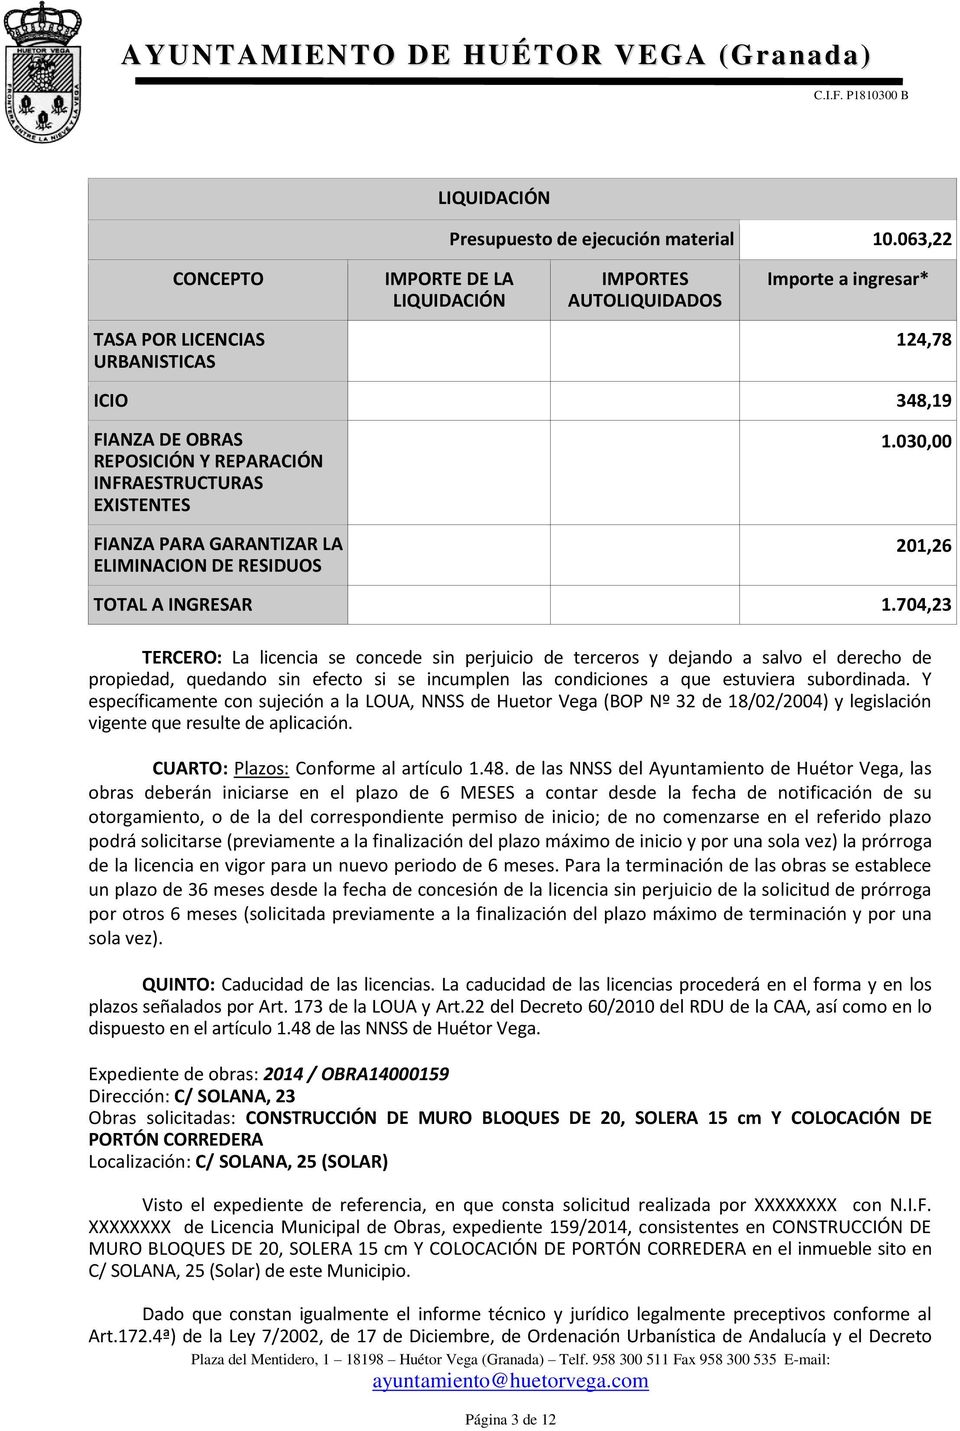 EXISTENTES FIANZA PARA GARANTIZAR LA ELIMINACION DE RESIDUOS 1.030,00-201,26 201,26 TOTAL A INGRESAR 1.